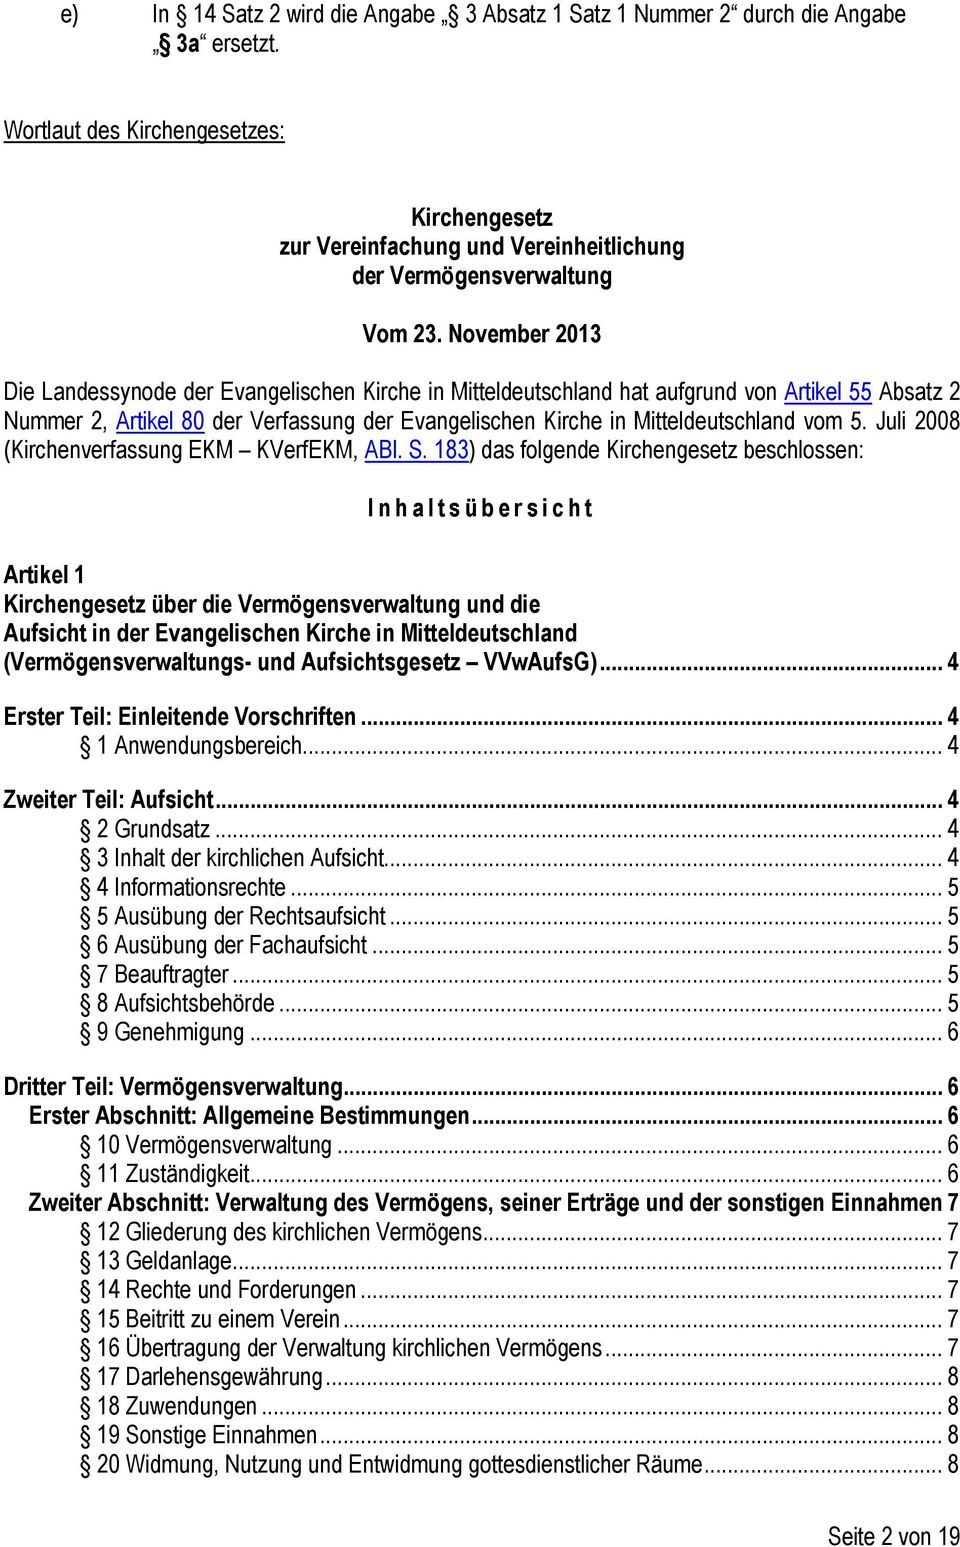 November 2013 Die Landessynode der Evangelischen Kirche in Mitteldeutschland hat aufgrund von Artikel 55 Absatz 2 Nummer 2, Artikel 80 der Verfassung der Evangelischen Kirche in Mitteldeutschland vom